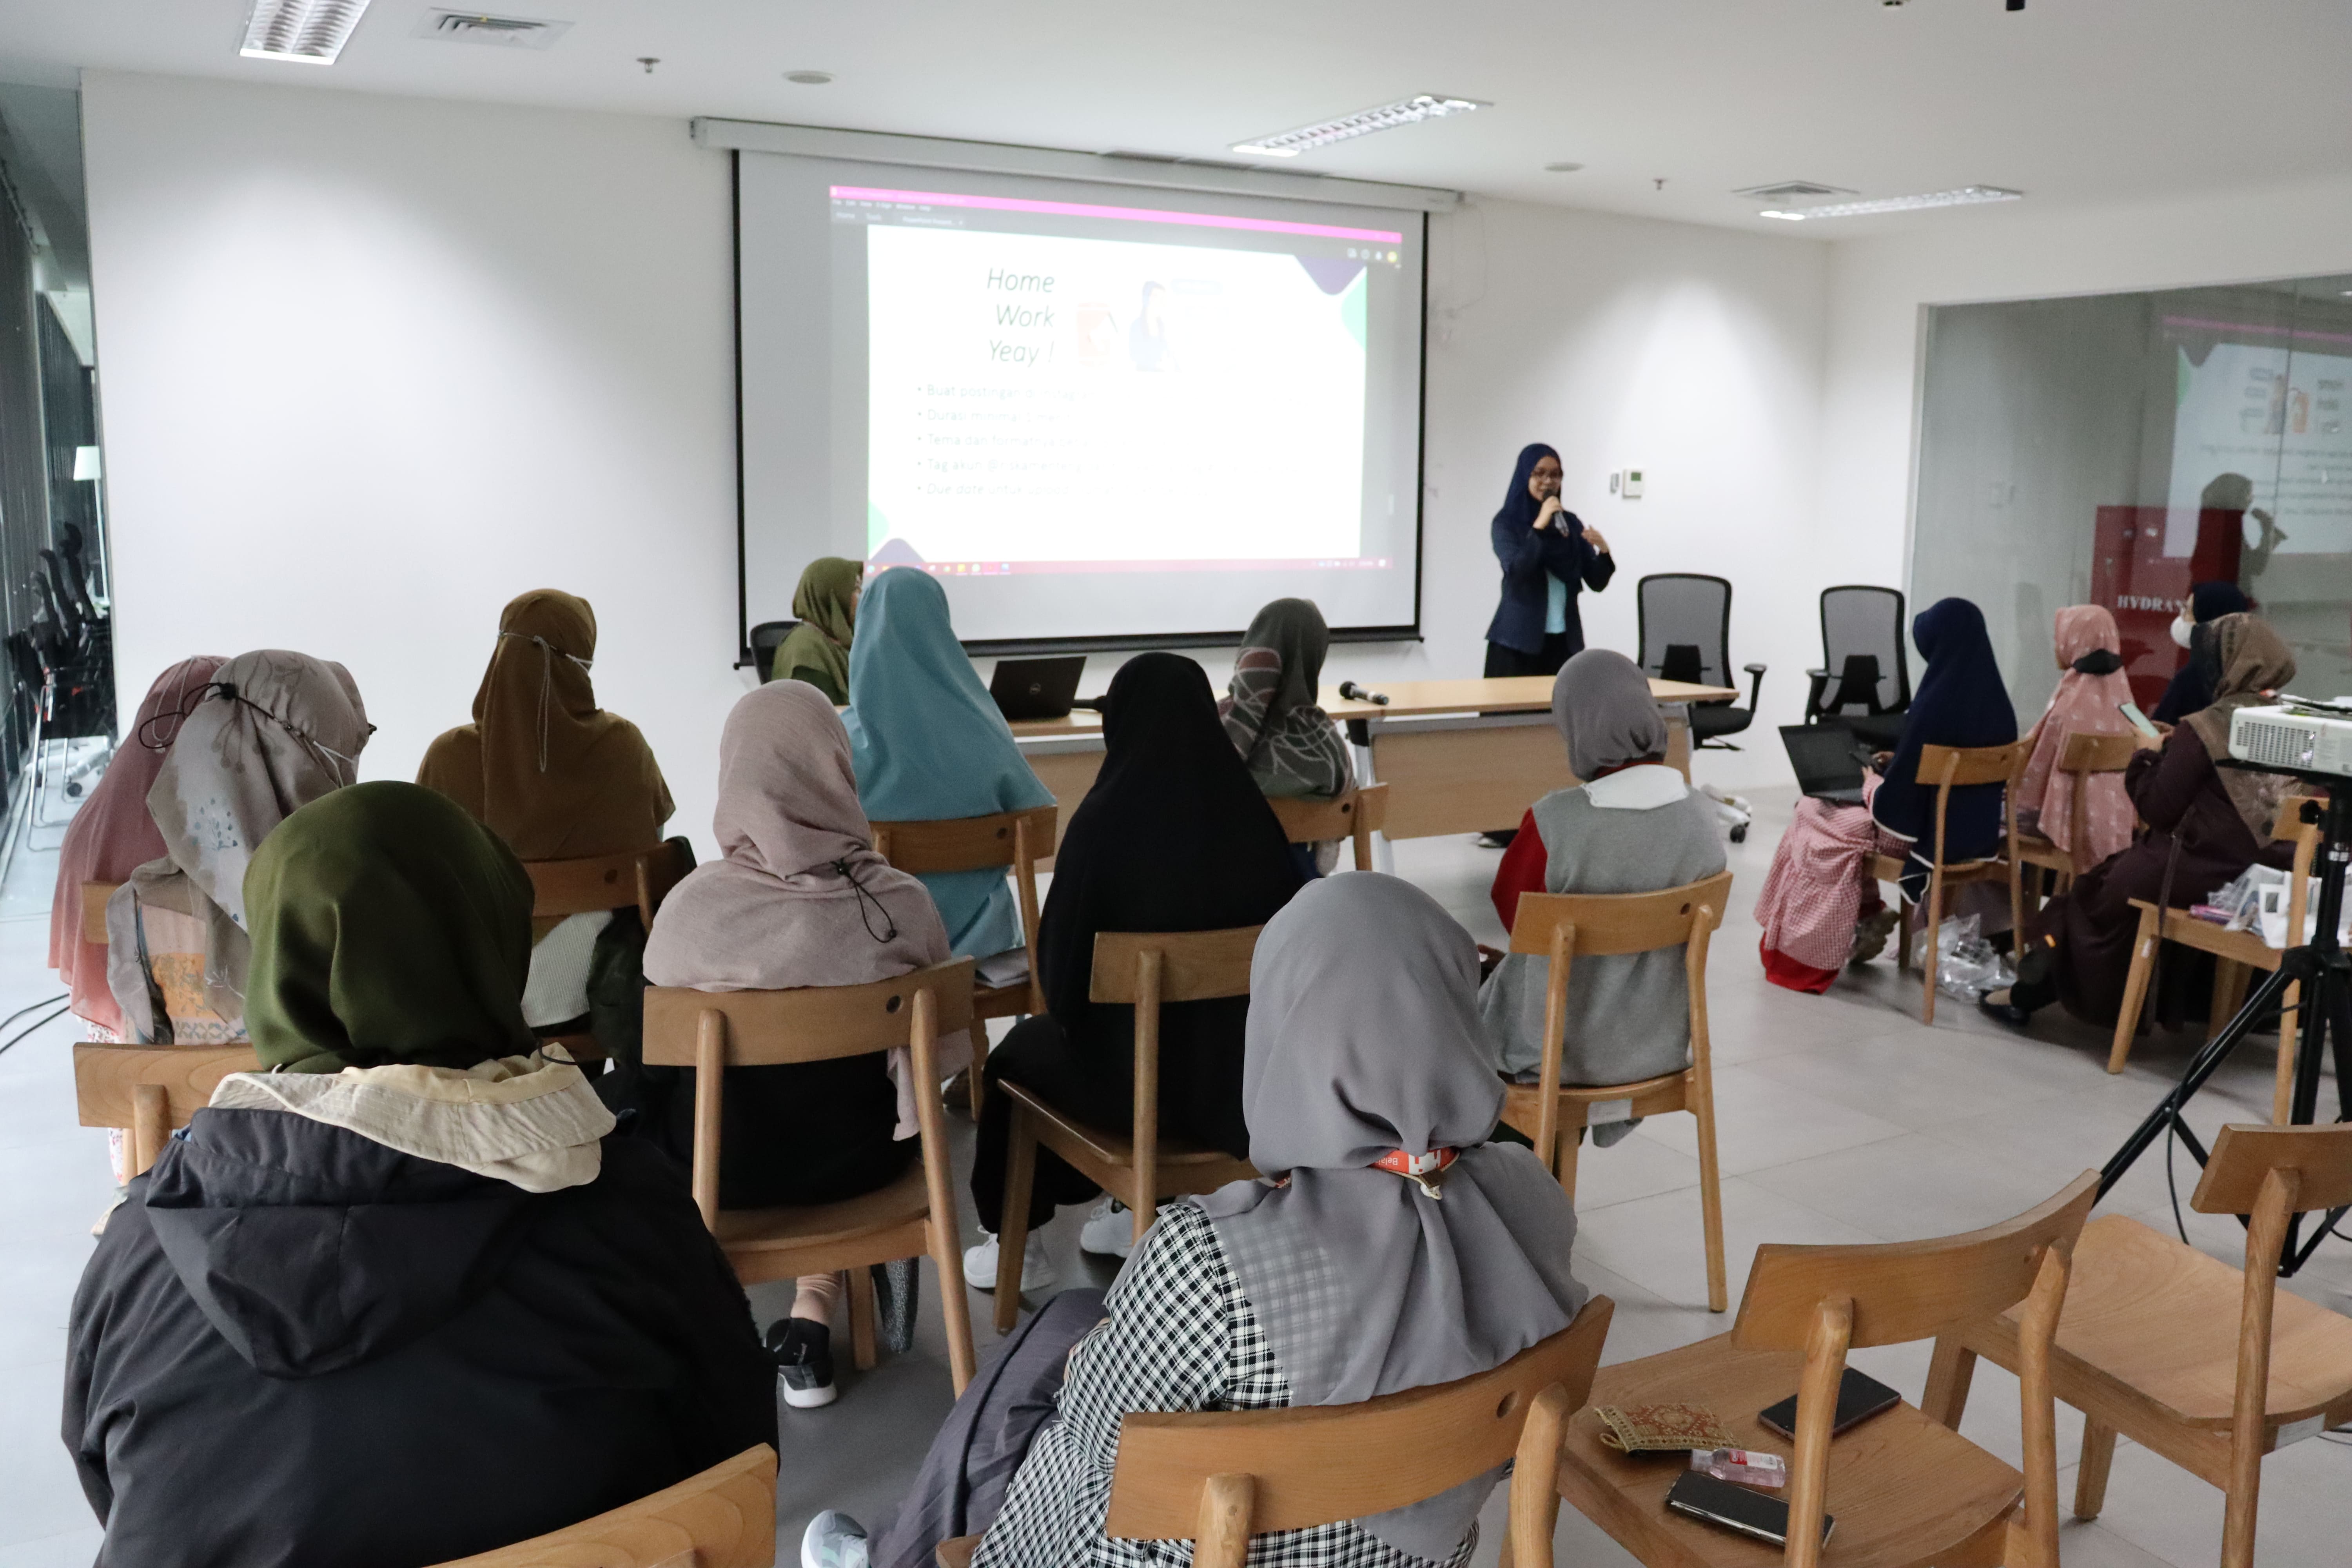 Public Speaking Sister Club (Remaja Islam Sunda Kelapa)